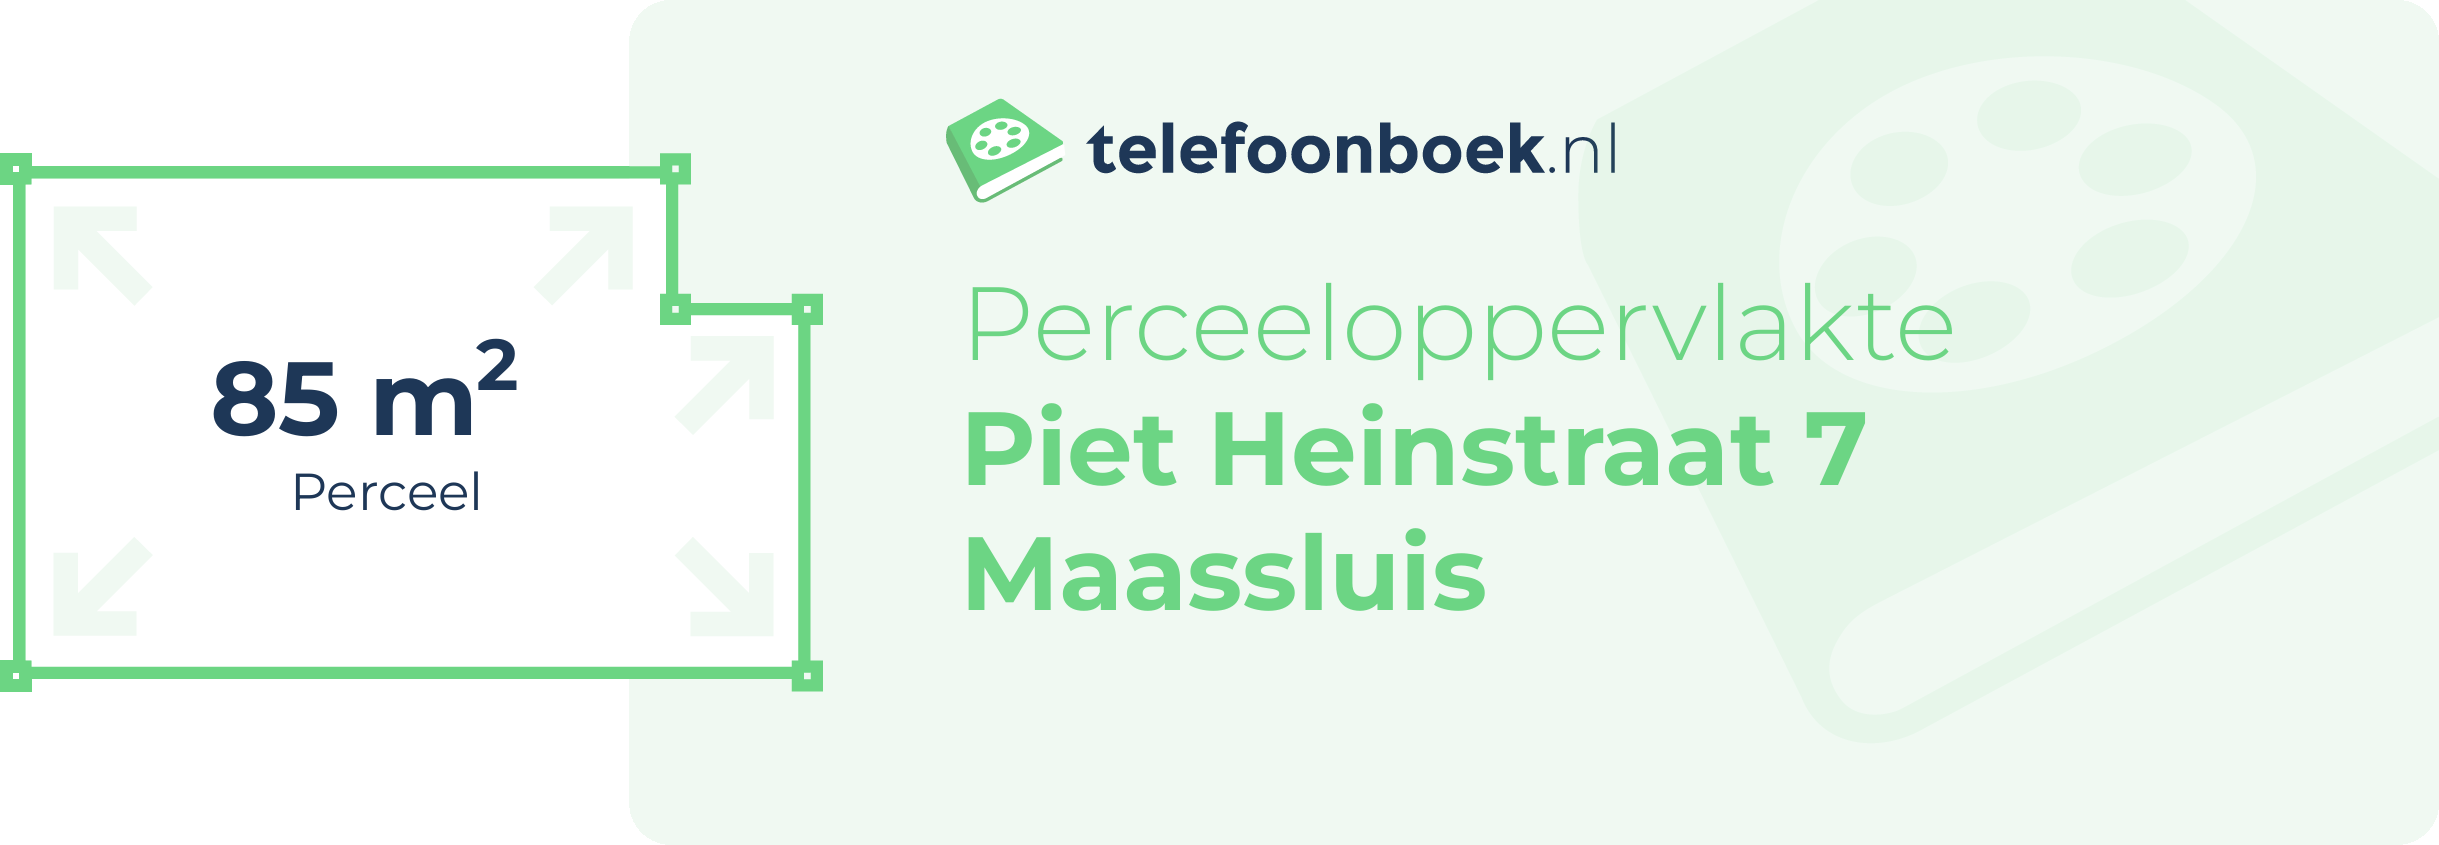 Perceeloppervlakte Piet Heinstraat 7 Maassluis